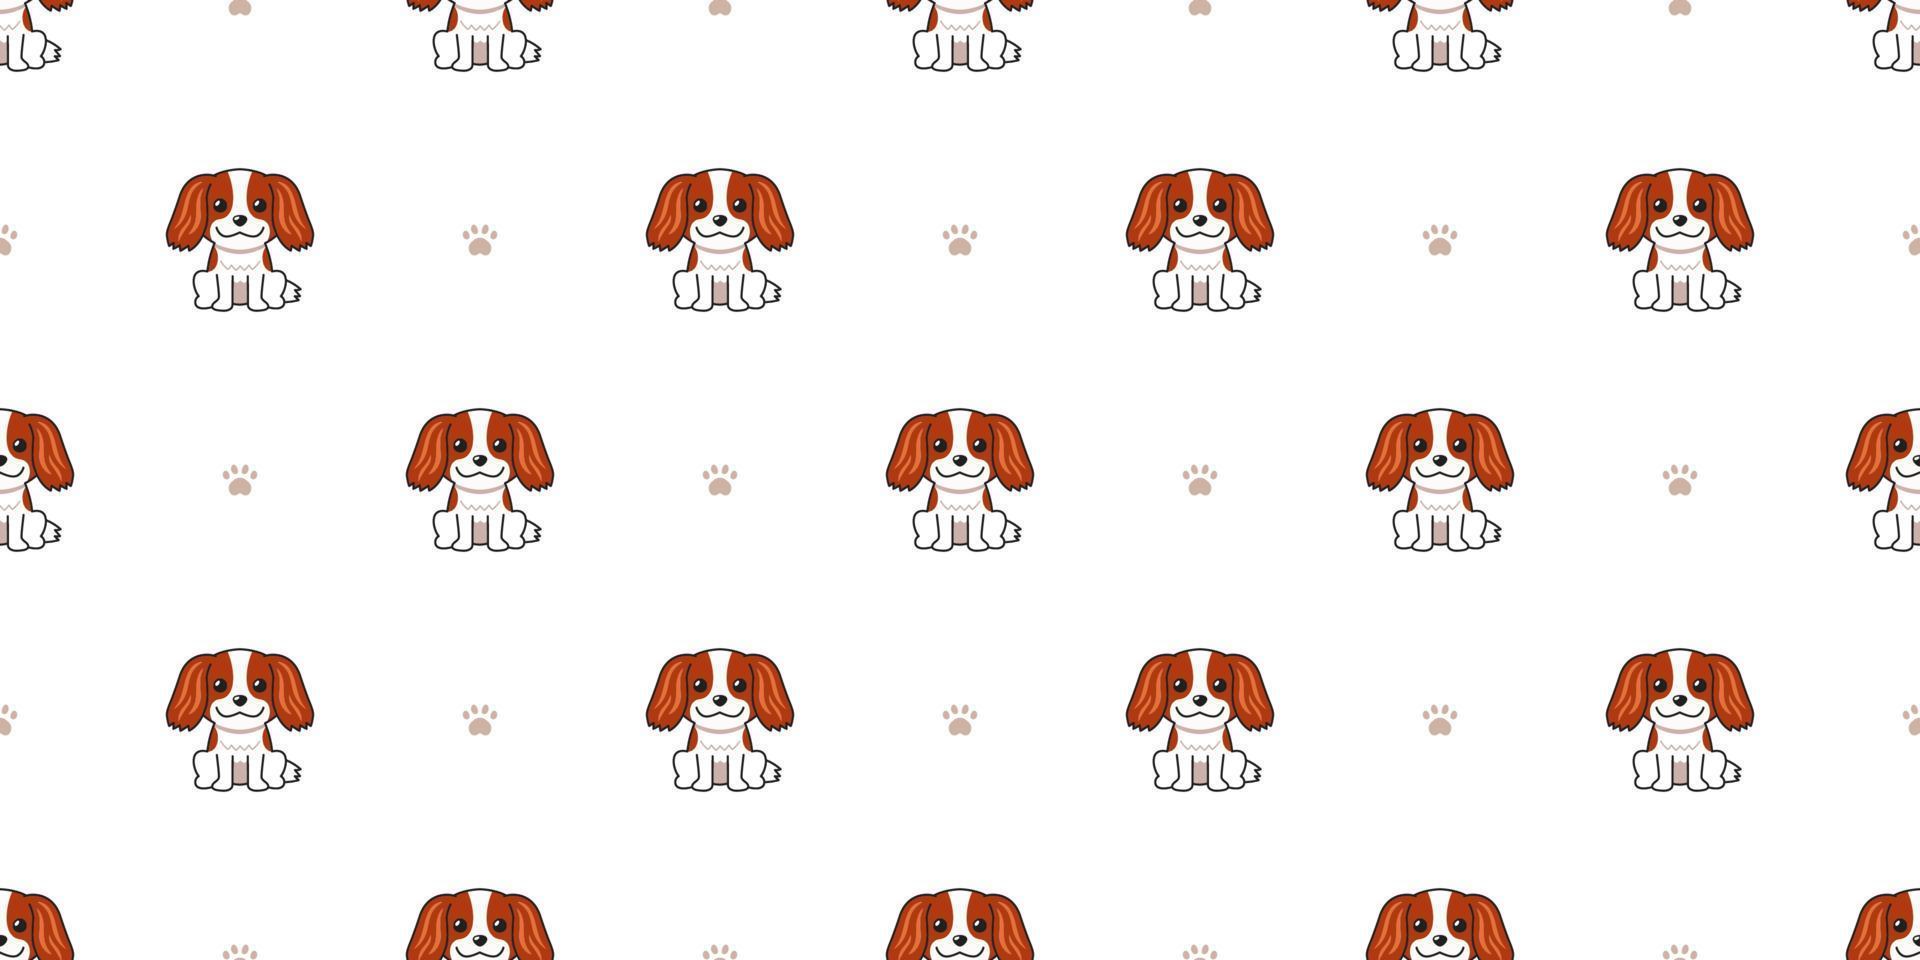 personaje de dibujos animados cavalier king charles spaniel perro de fondo transparente vector